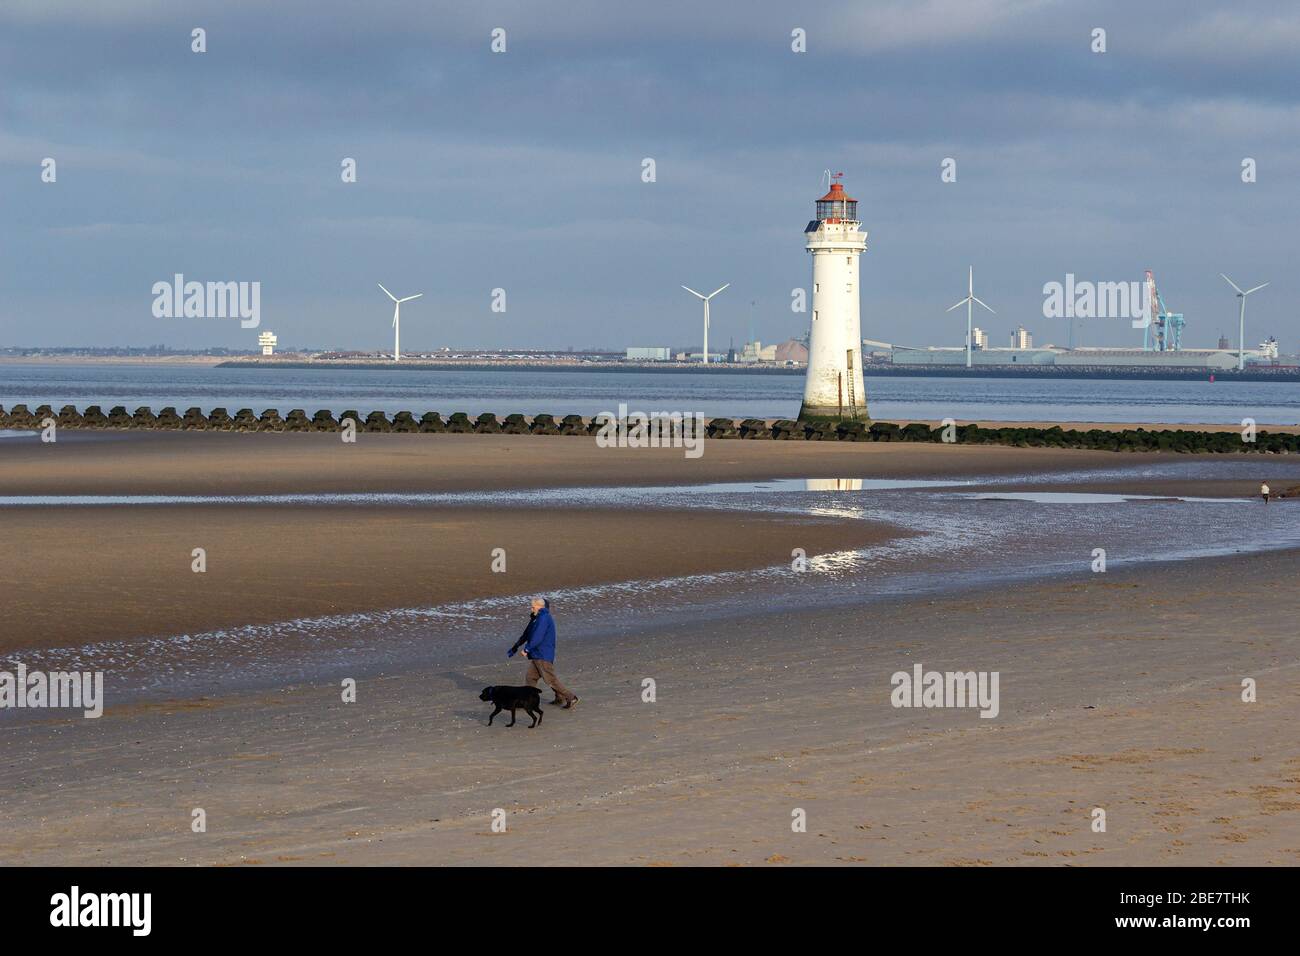 New Brighton Beach, Hundespaziergänger und Leuchtturm bei Ebbe. Liverpools Seaforth Docks im Hintergrund. Stockfoto